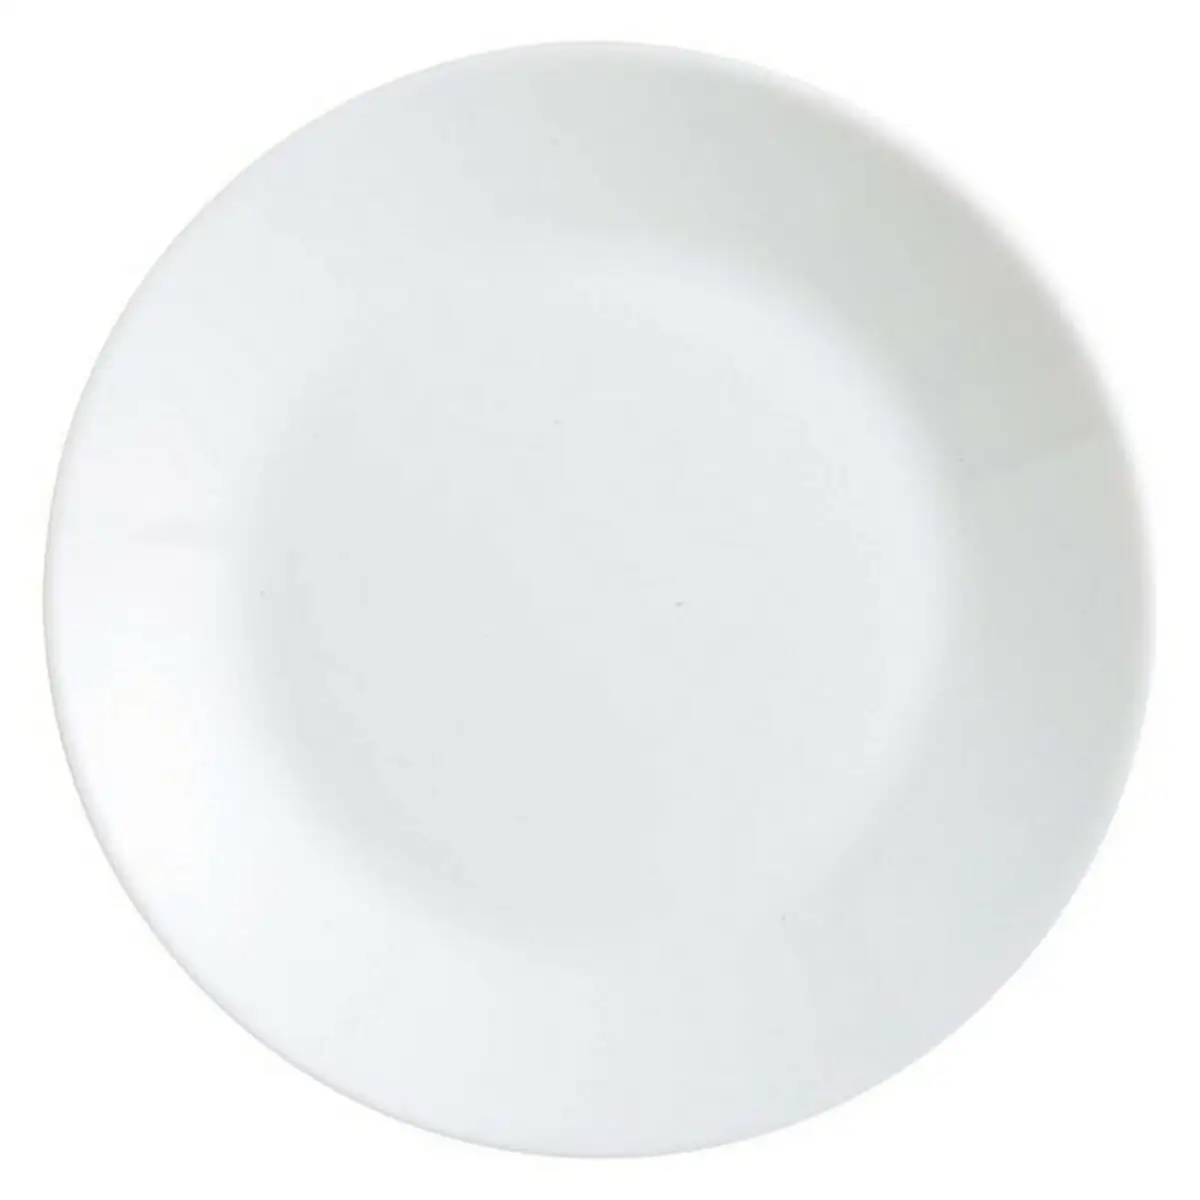 Service de vaisselle arcopal zelie arcopal w blanc verre 18 cm 12 pcs _5199. Bienvenue sur DIAYTAR SENEGAL - Où l'Authenticité Rencontre le Confort. Plongez dans notre univers de produits qui allient tradition et commodité pour répondre à vos besoins.